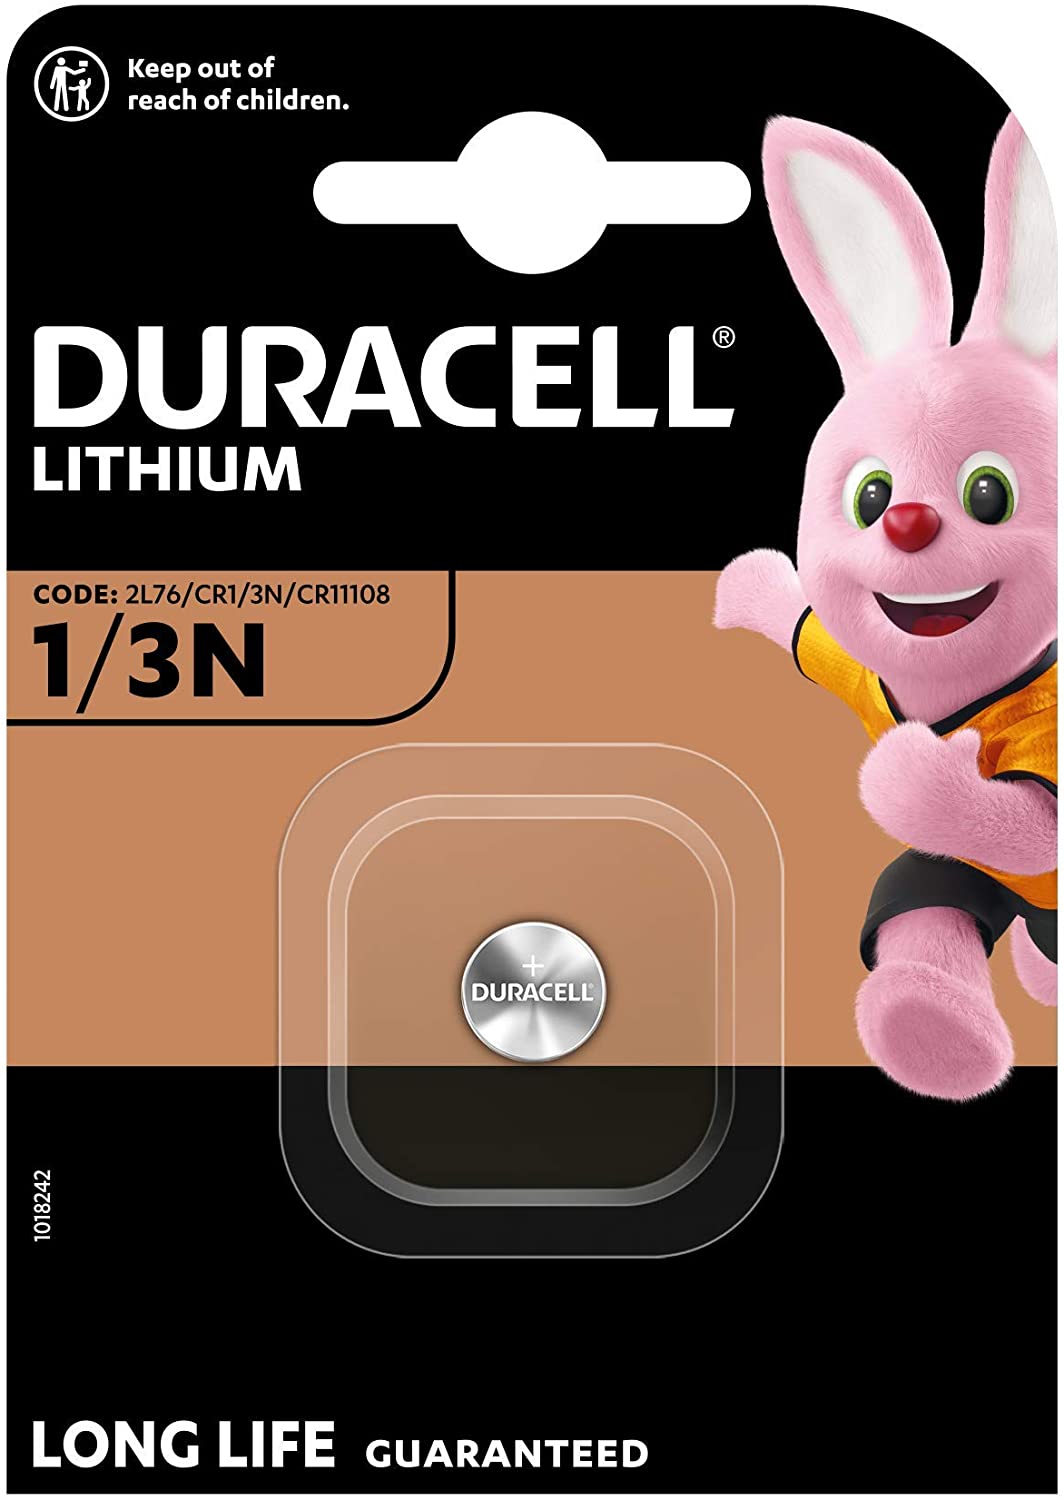 Duracell 1/3N, Lithium Hochleistungsbatterie, CR11108 2L76, 160mAh, 1er-Pack